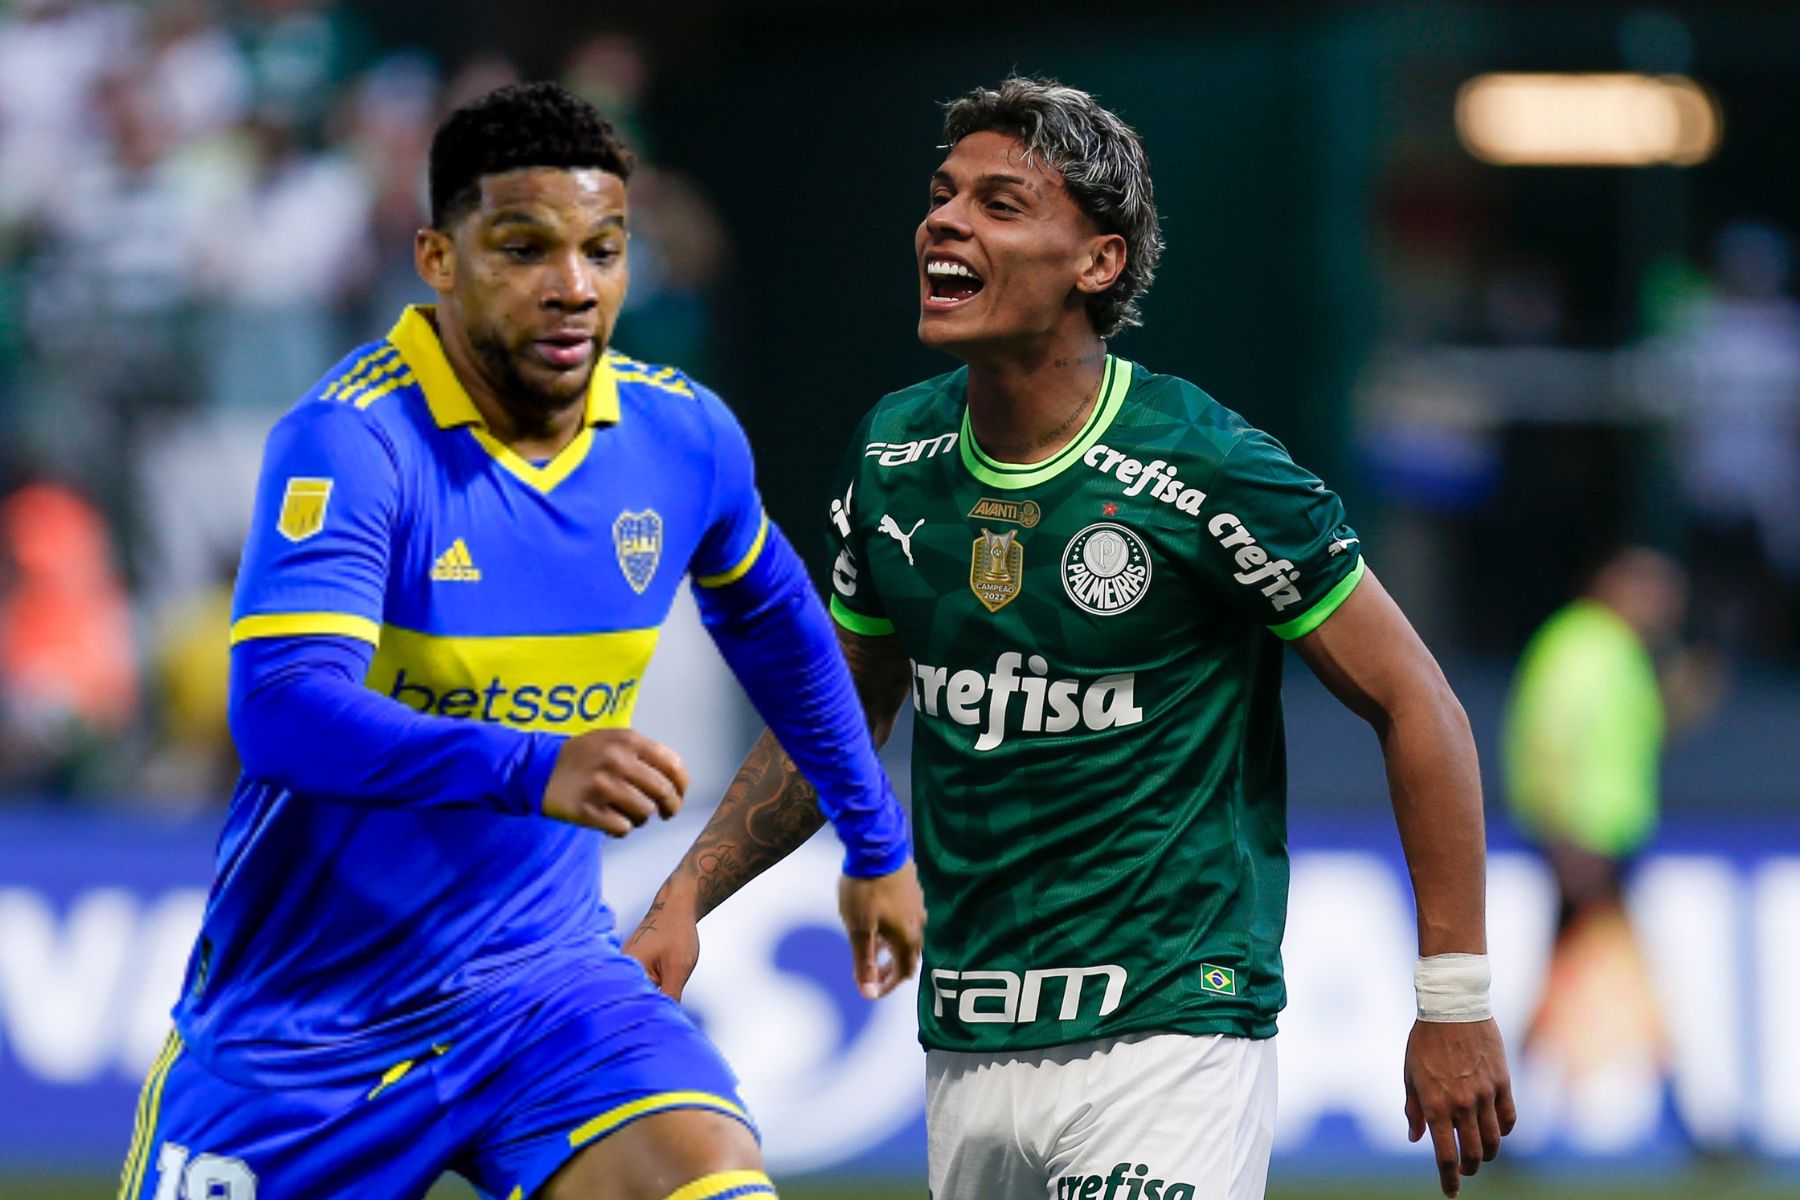 Seis colombianos siguen en competencia en la Copa Libertadores y ahora jugarán las semifinales del torneo.